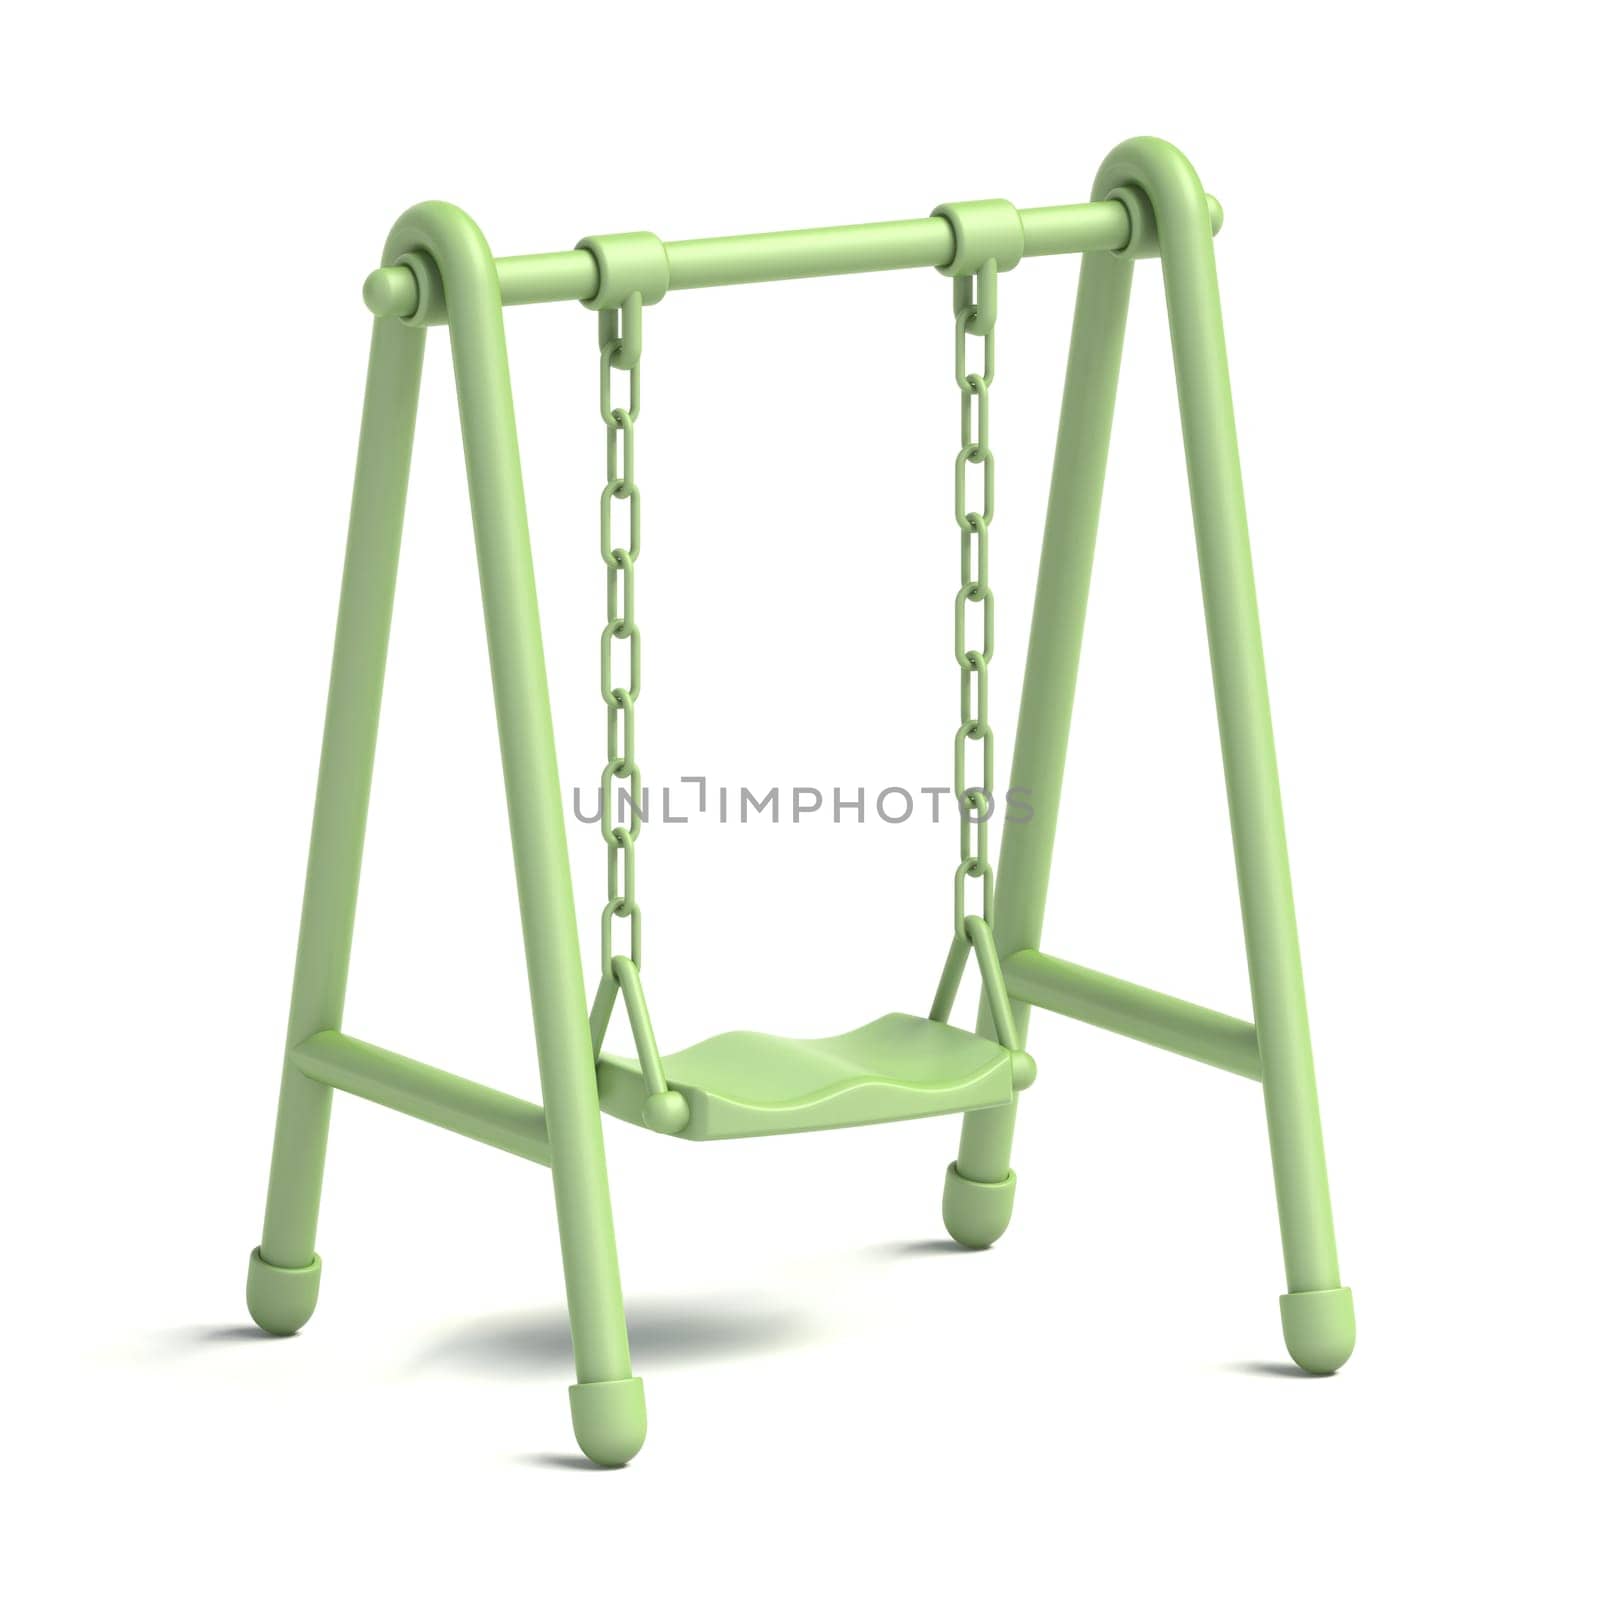 Green single children swing 3D rendering illustration isolated on white background